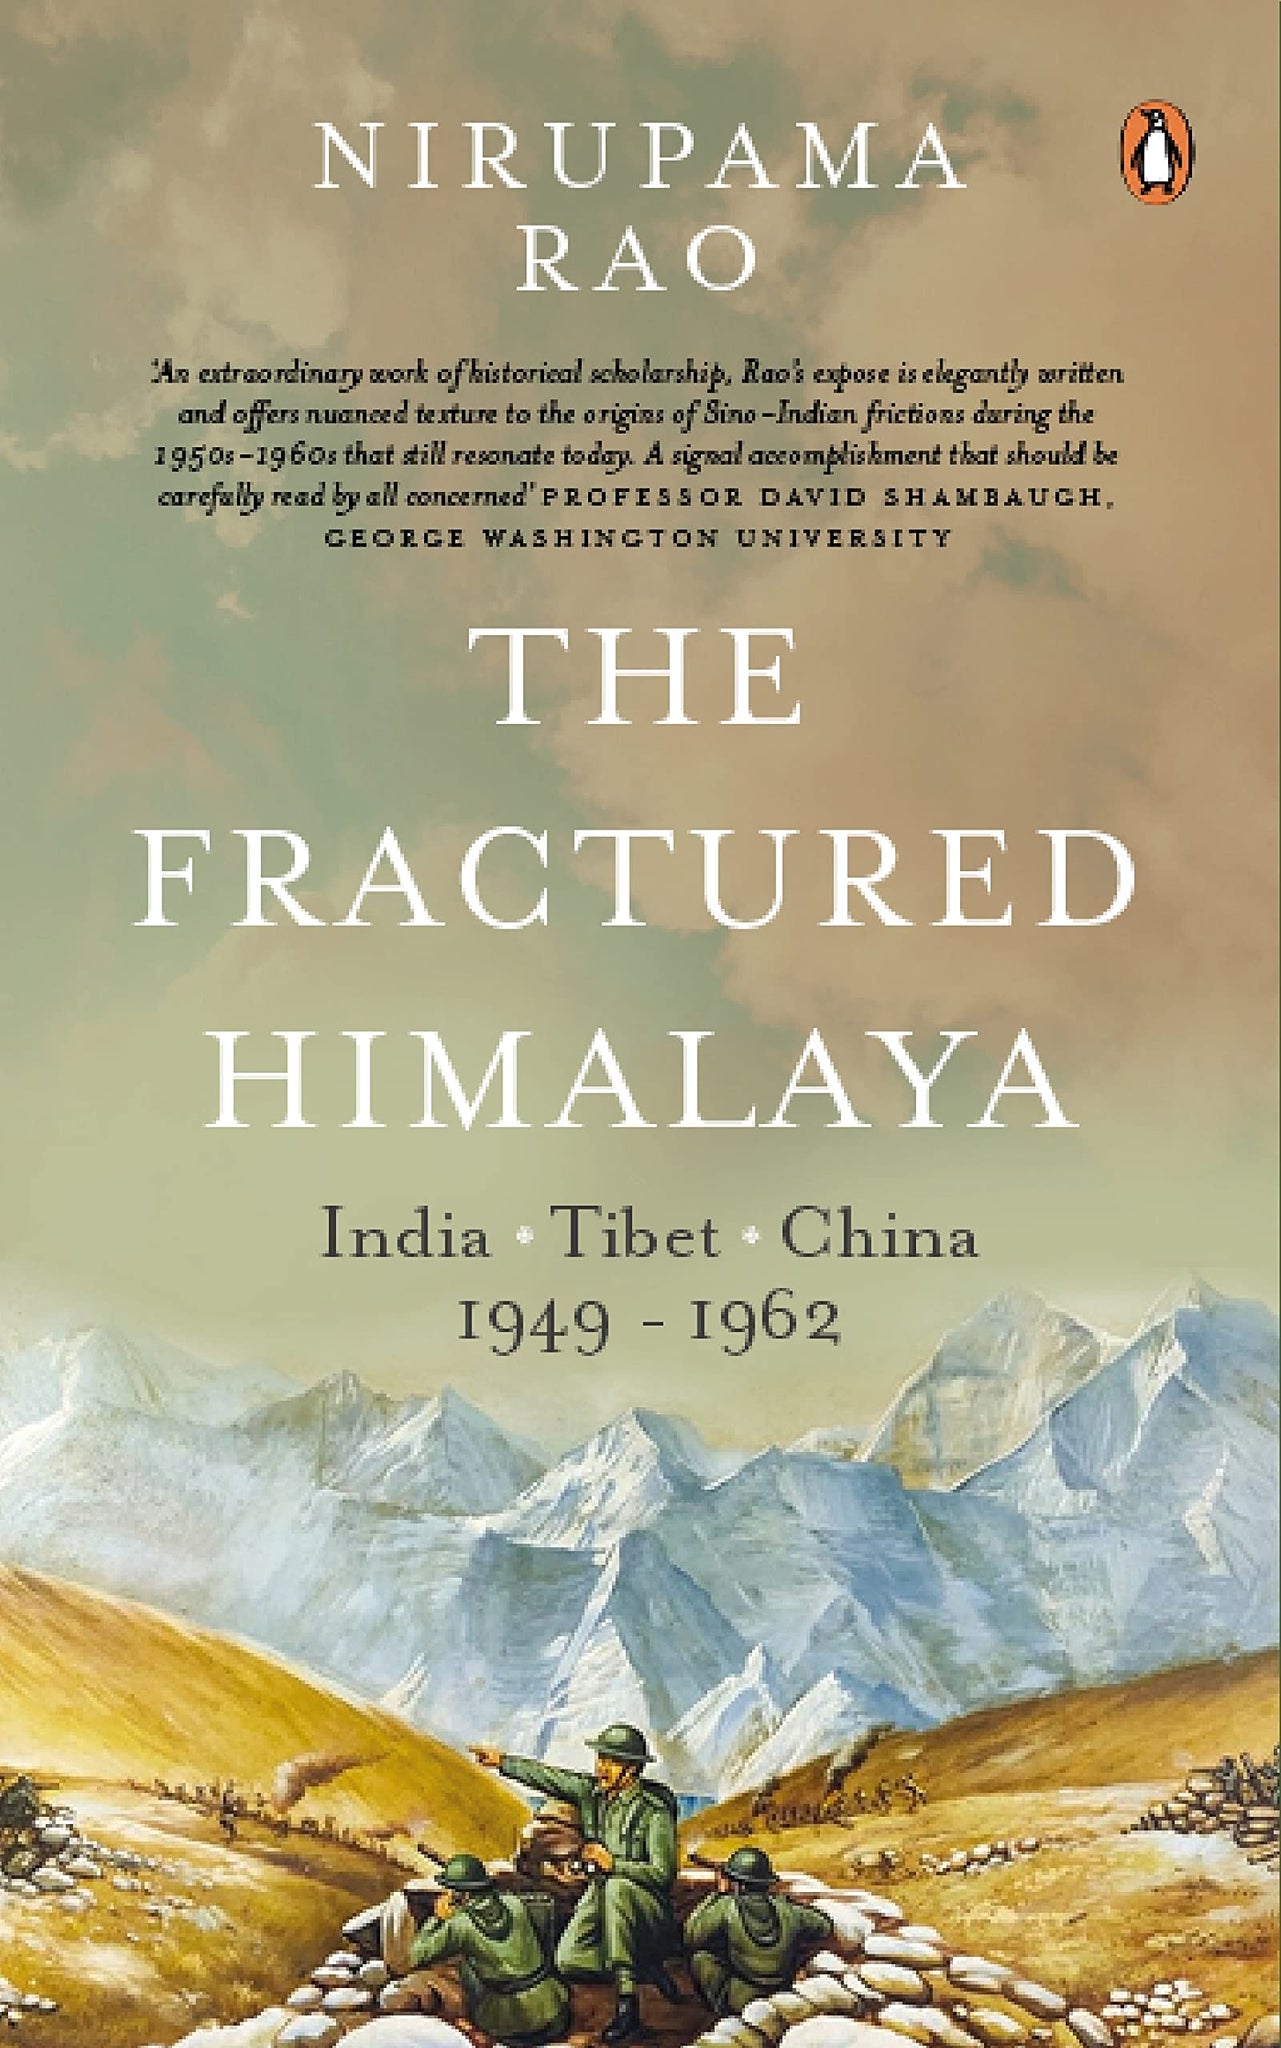 The Fractured Himalaya: India, Tibet, China 1949-1962